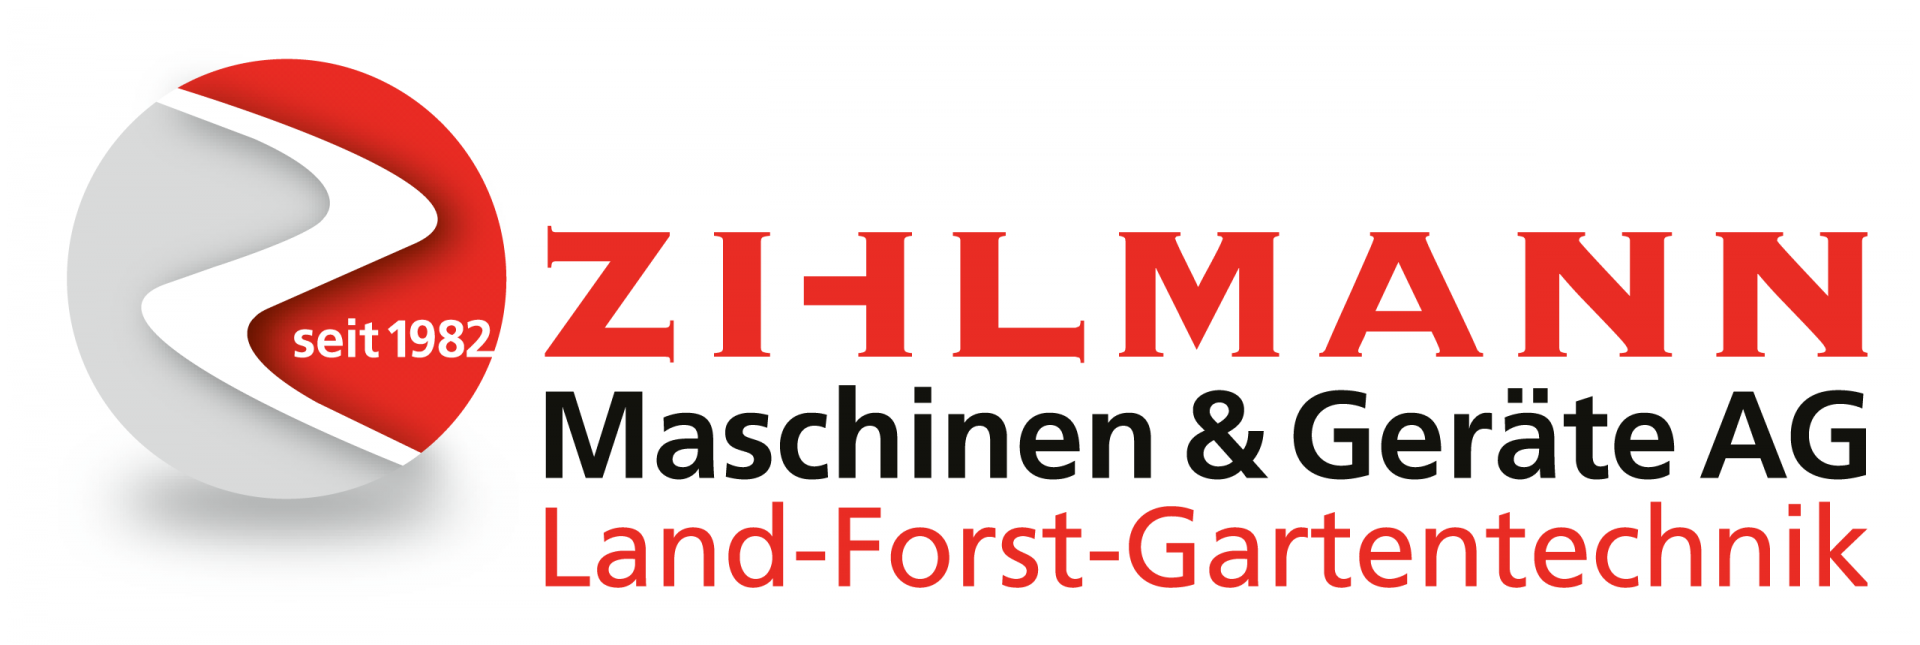 zihlmann_landm_etiketten.png